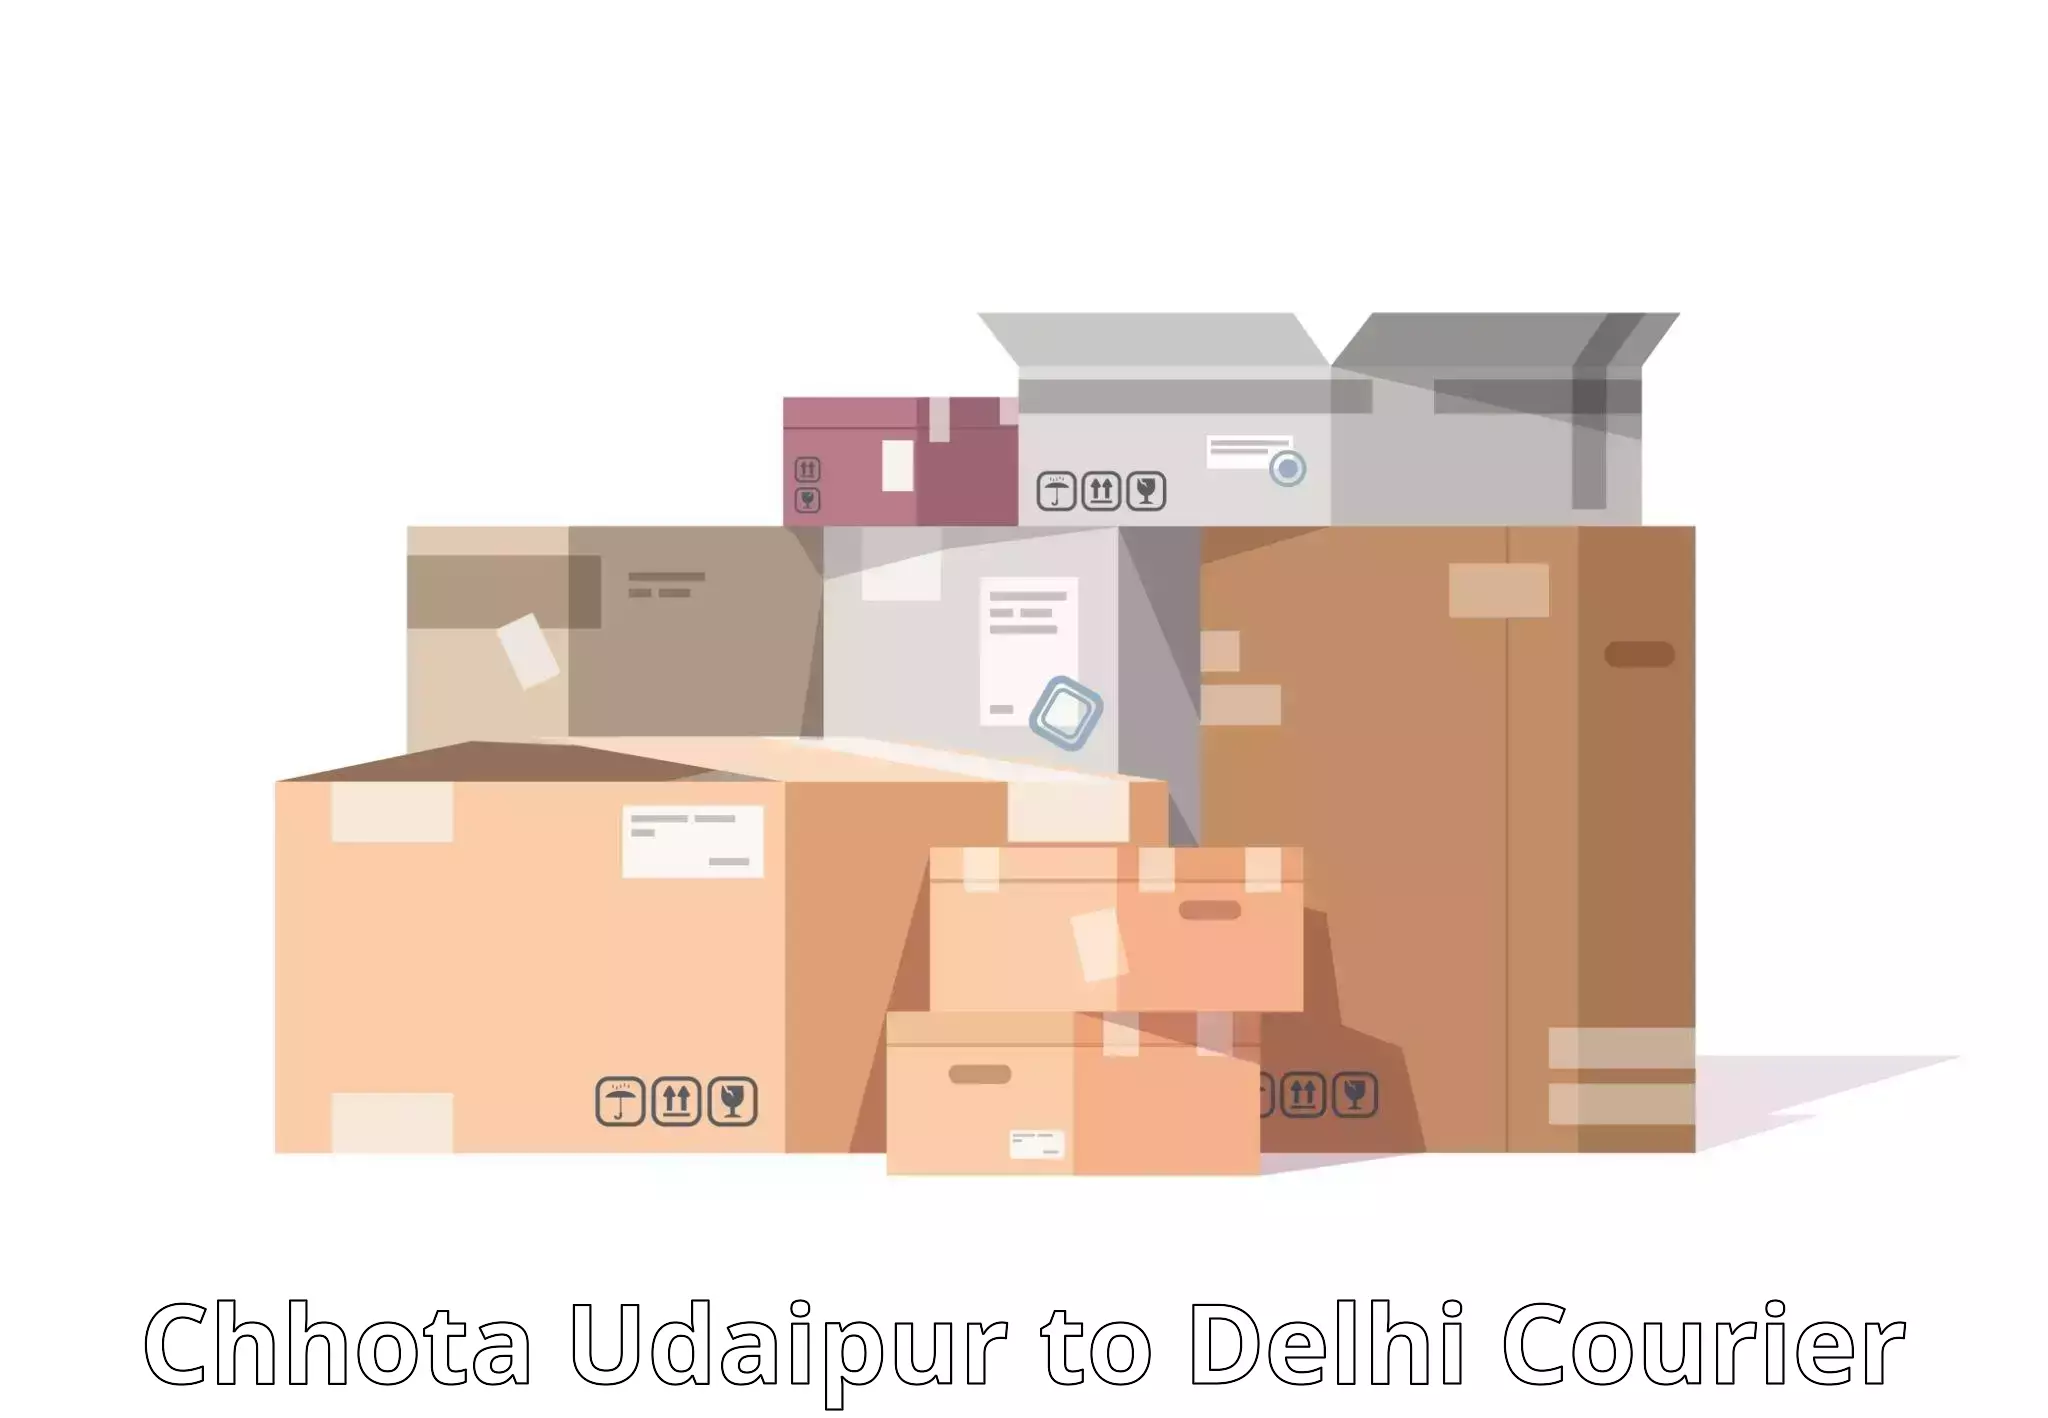 Streamlined logistics management Chhota Udaipur to University of Delhi